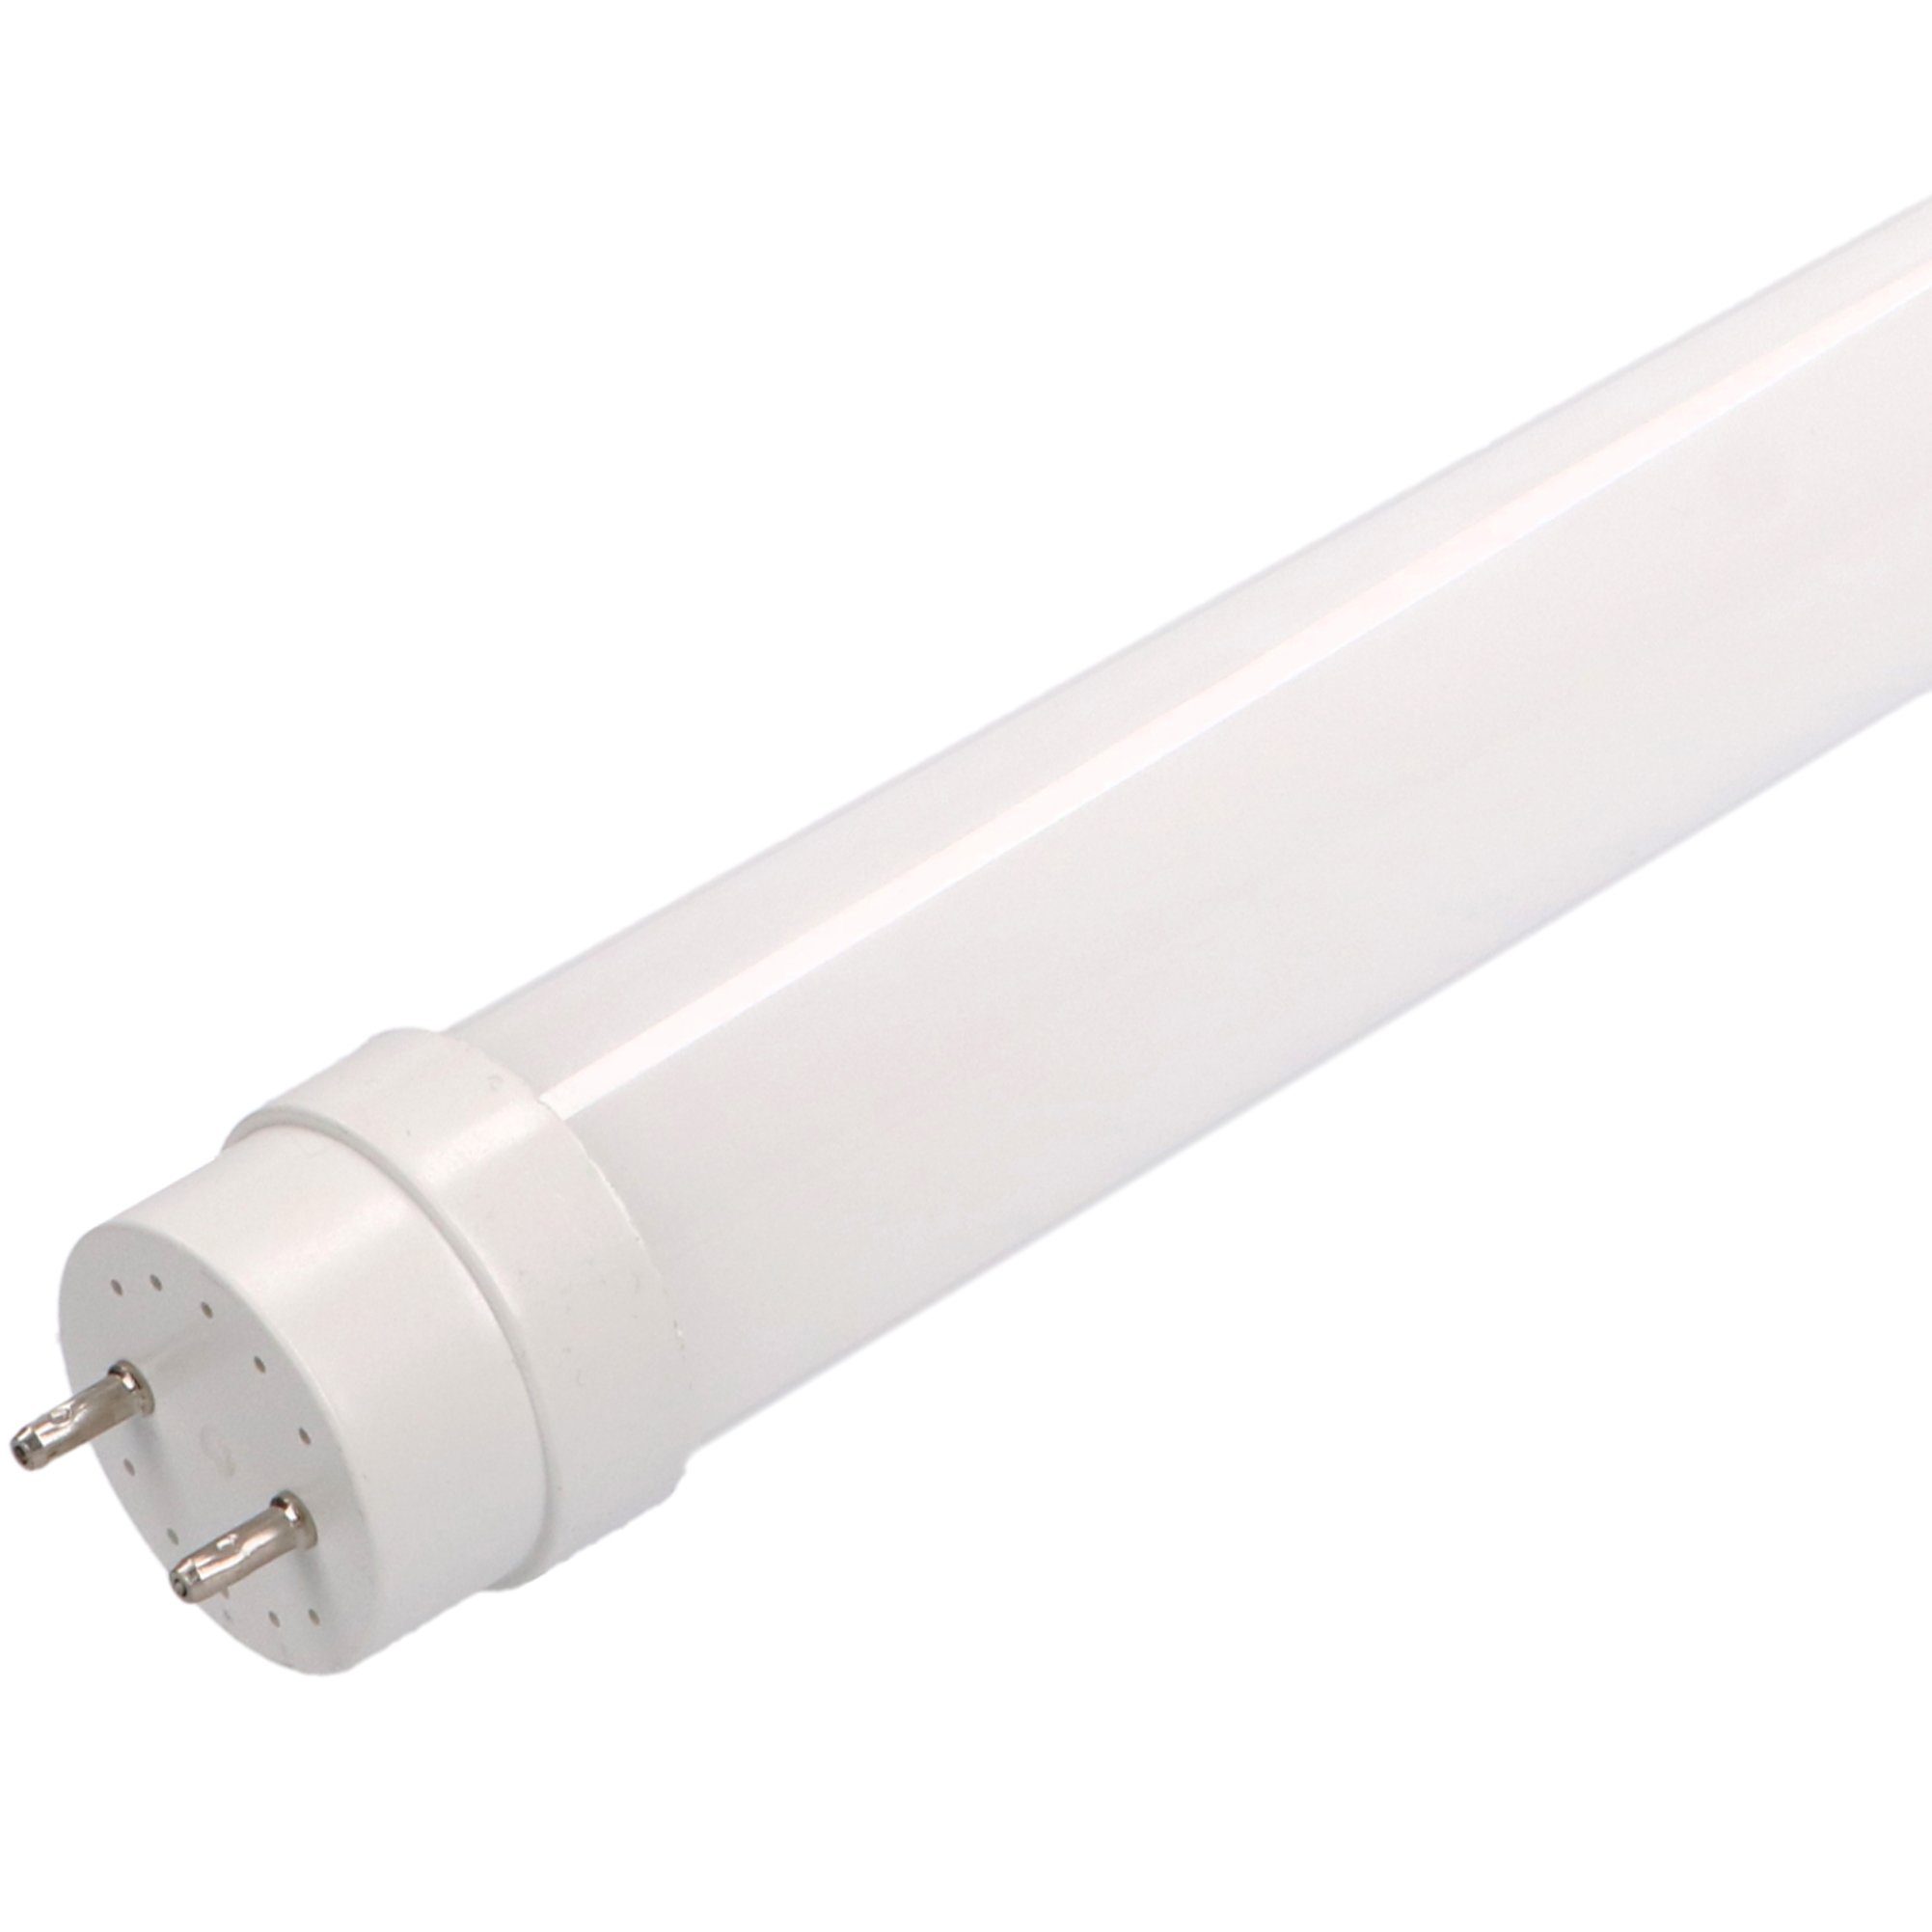 LED's light Basic LED-Leuchtmittel 0610729 LED-Röhre, 150 cm 22 Watt warmweiß G13 mit Starter für KVG/VVG